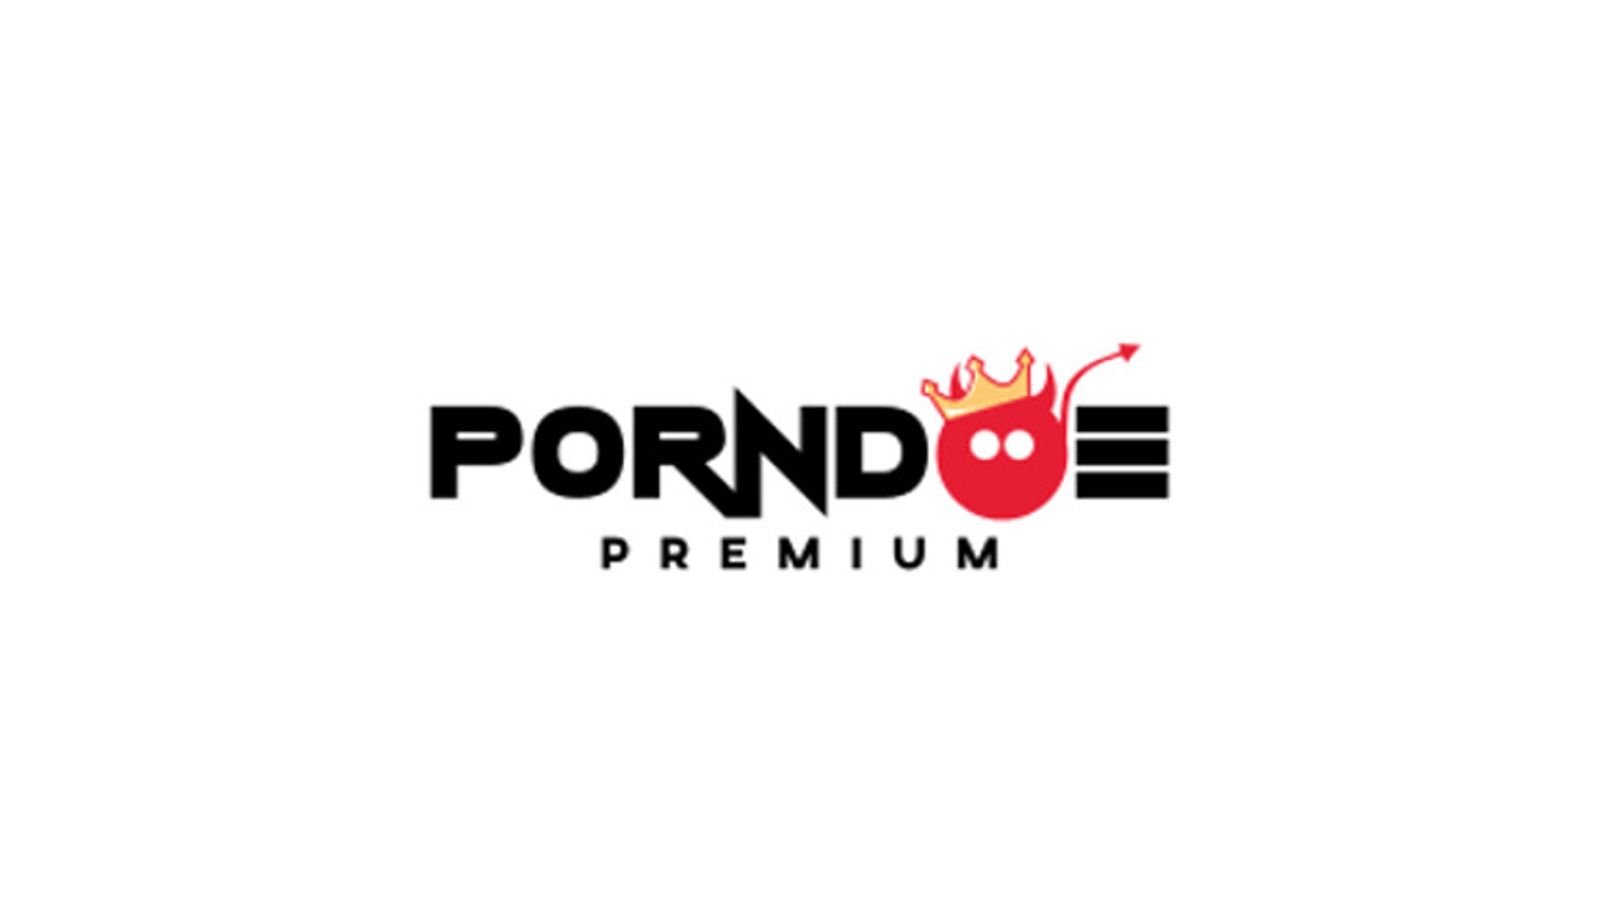 Porndoe Premium to Launch Latina POV Niche Site